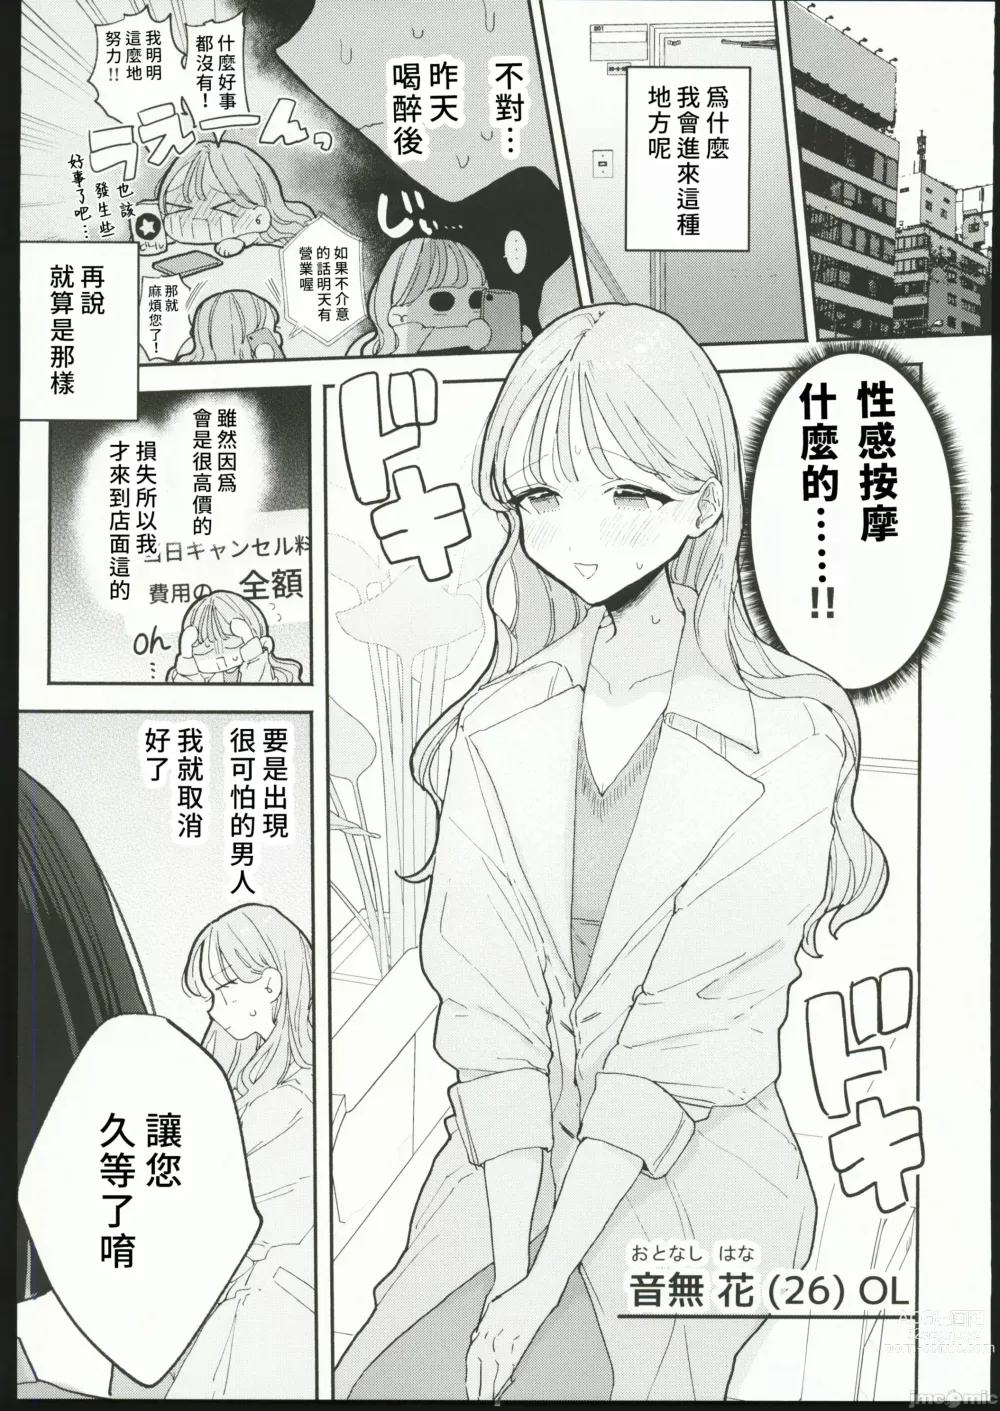 Page 4 of manga 絶頂リフレ 駅前の性感マッサージ店で○○になっちゃう女の子の話